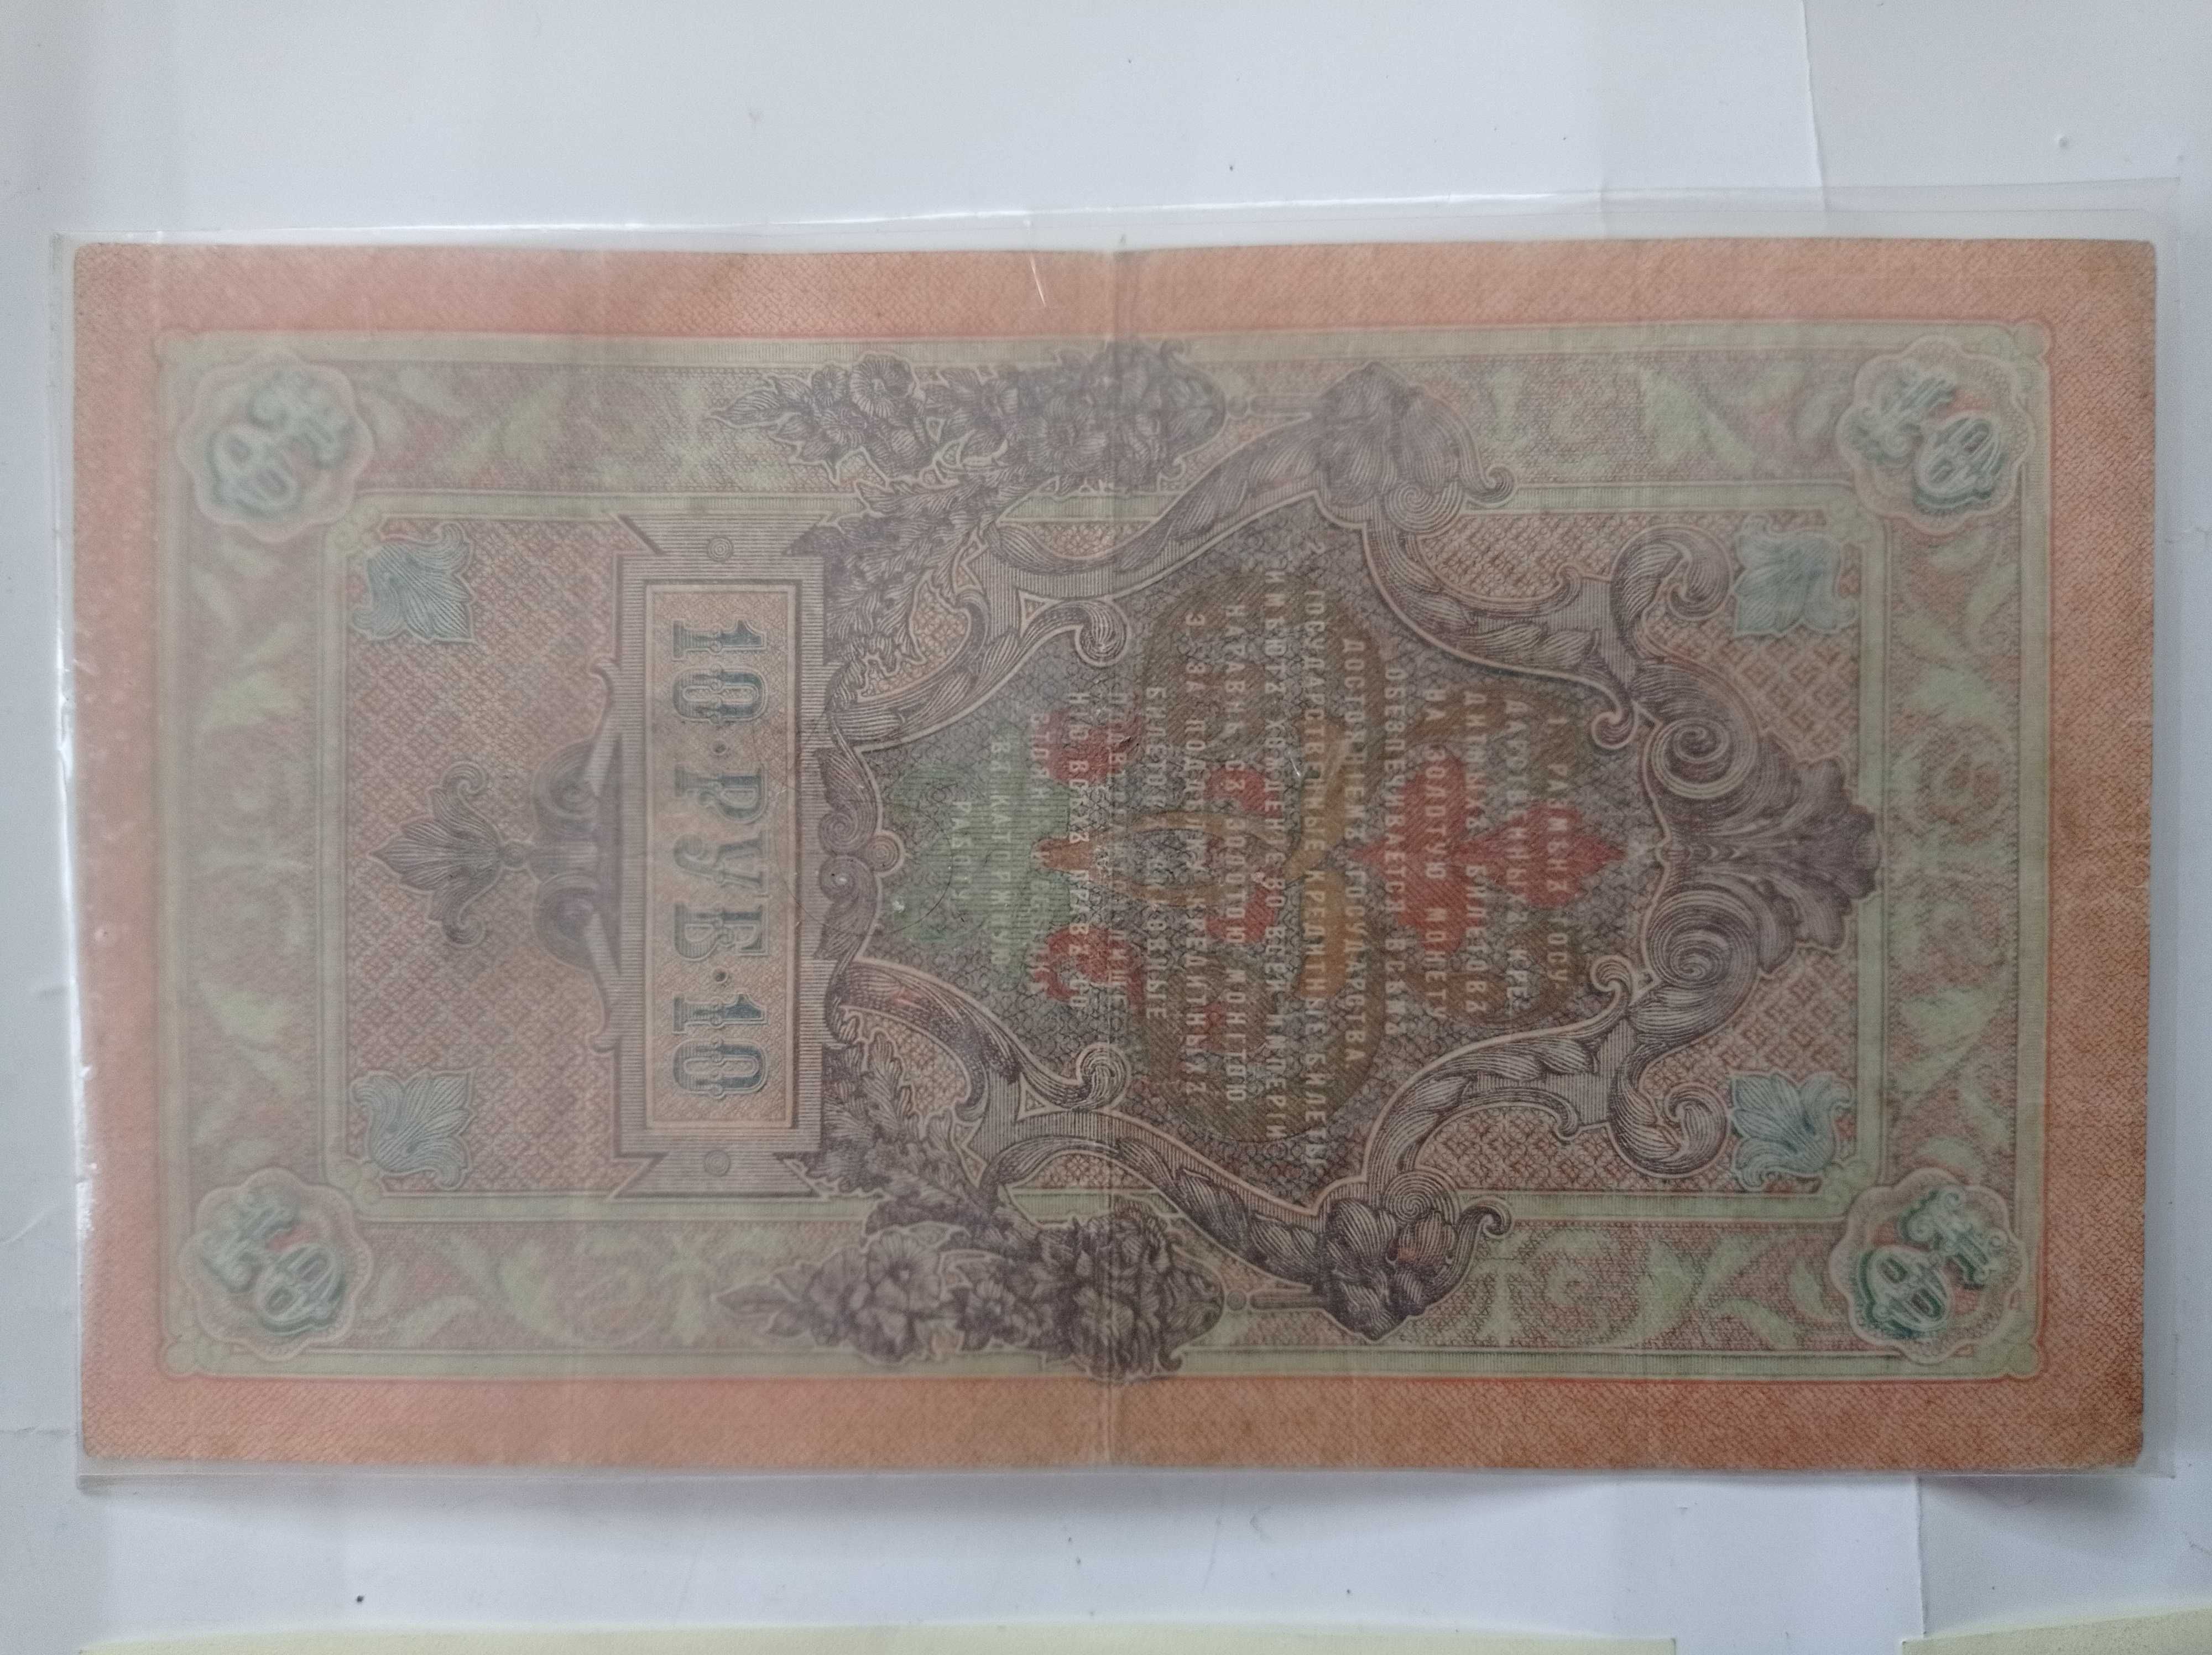 Stare banknoty - 10 rubli 1909 + 1000 zł 1982 + 6 x 100 zł 1988